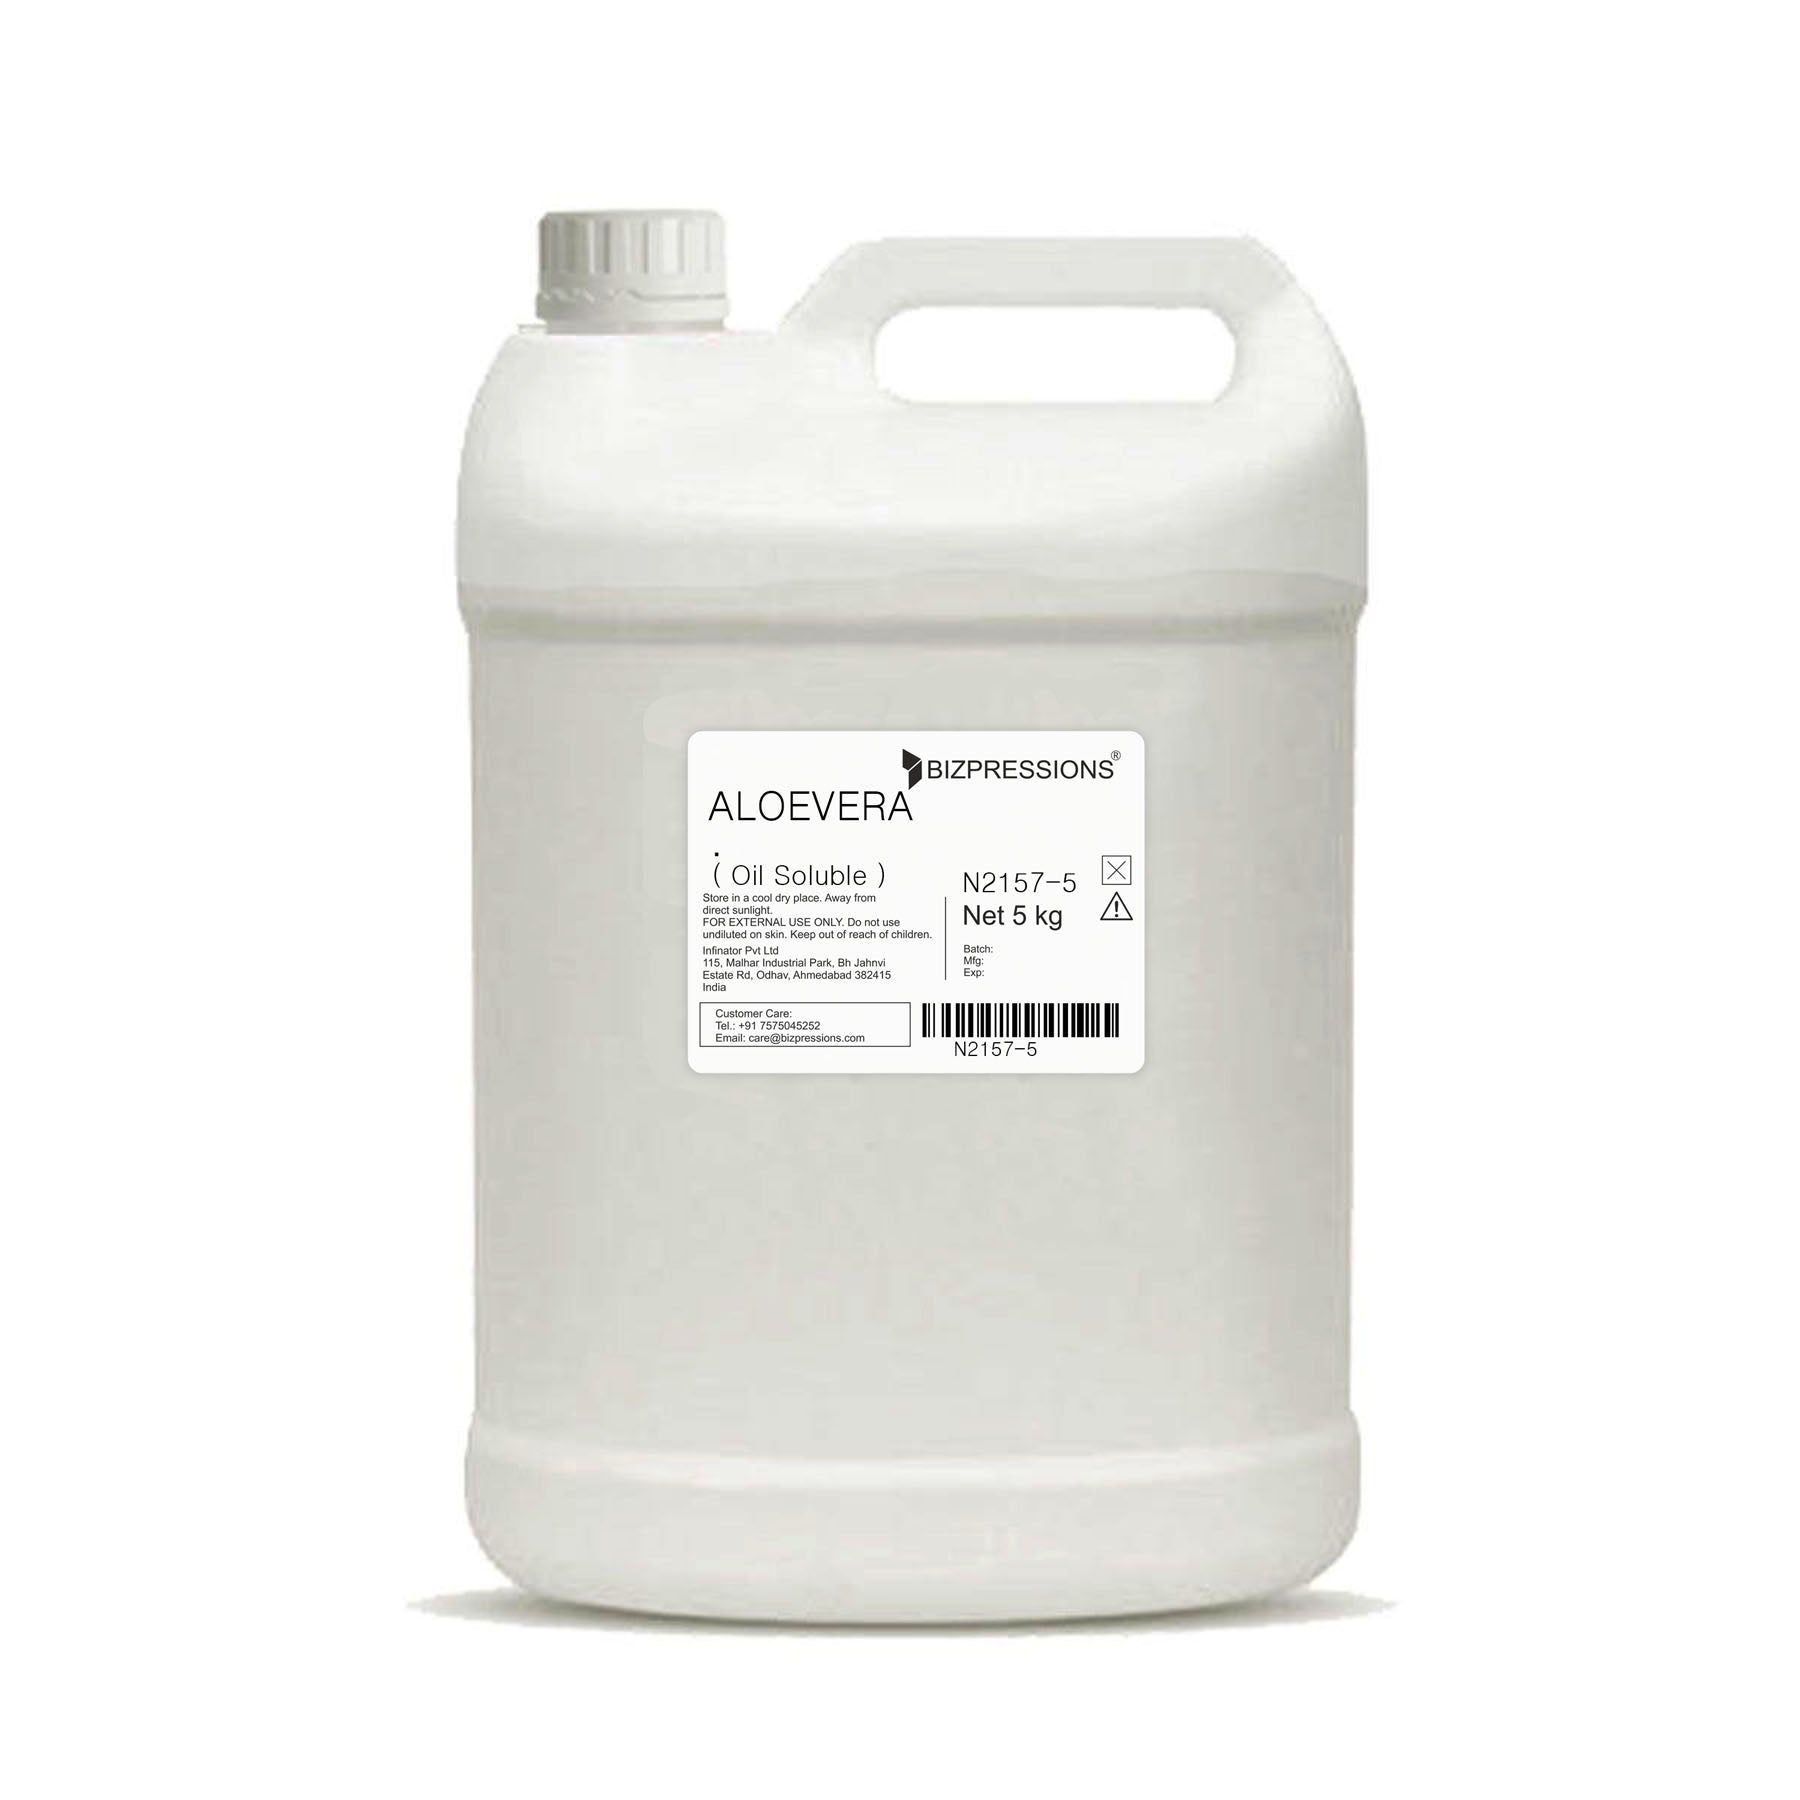 ALOEVERA - Fragrance ( Oil Soluble ) - 5 kg